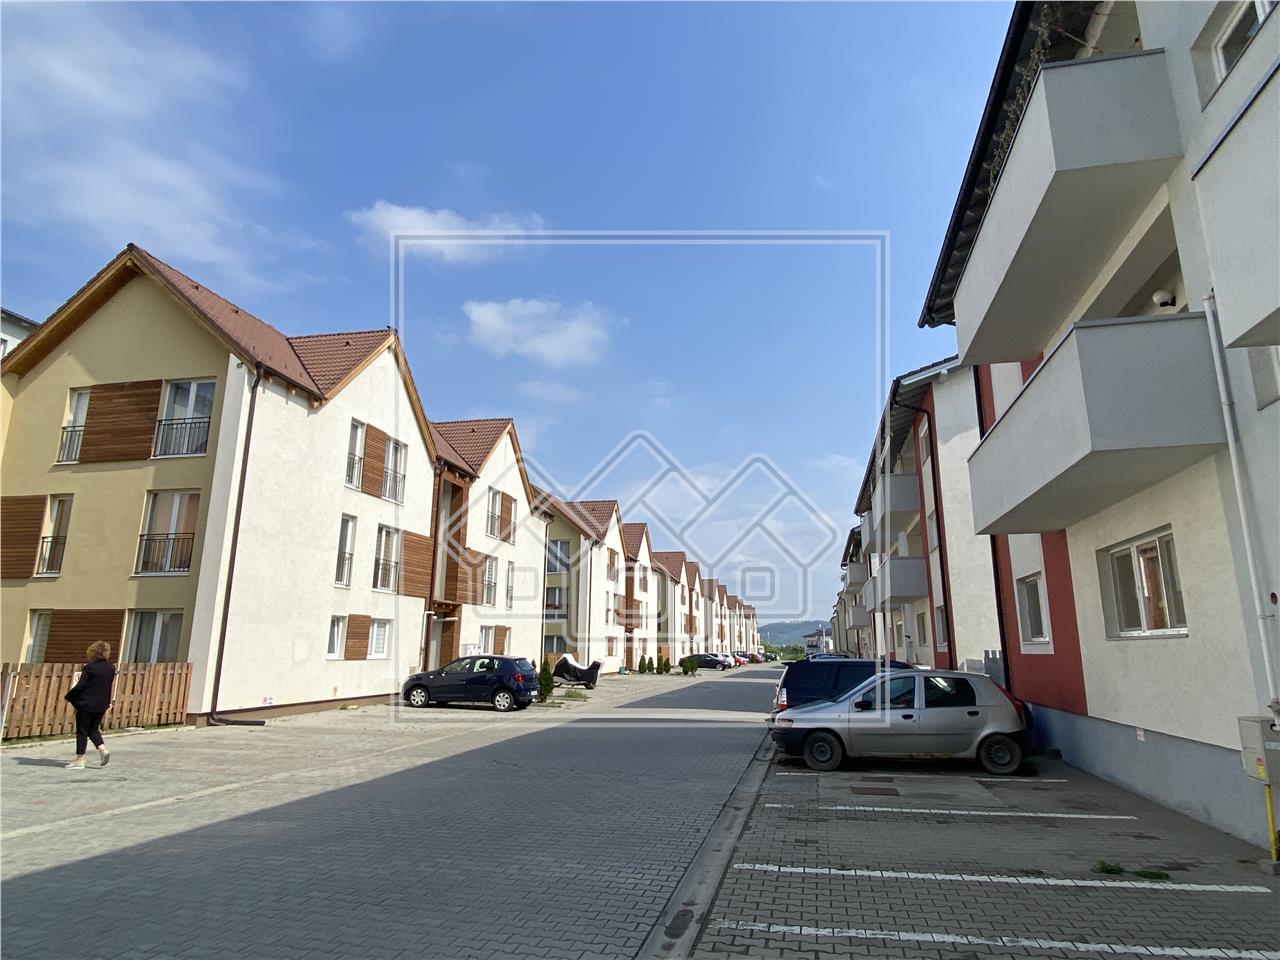 Apartament de vanzare in Sibiu - 51 mp utili - finisat la cheie